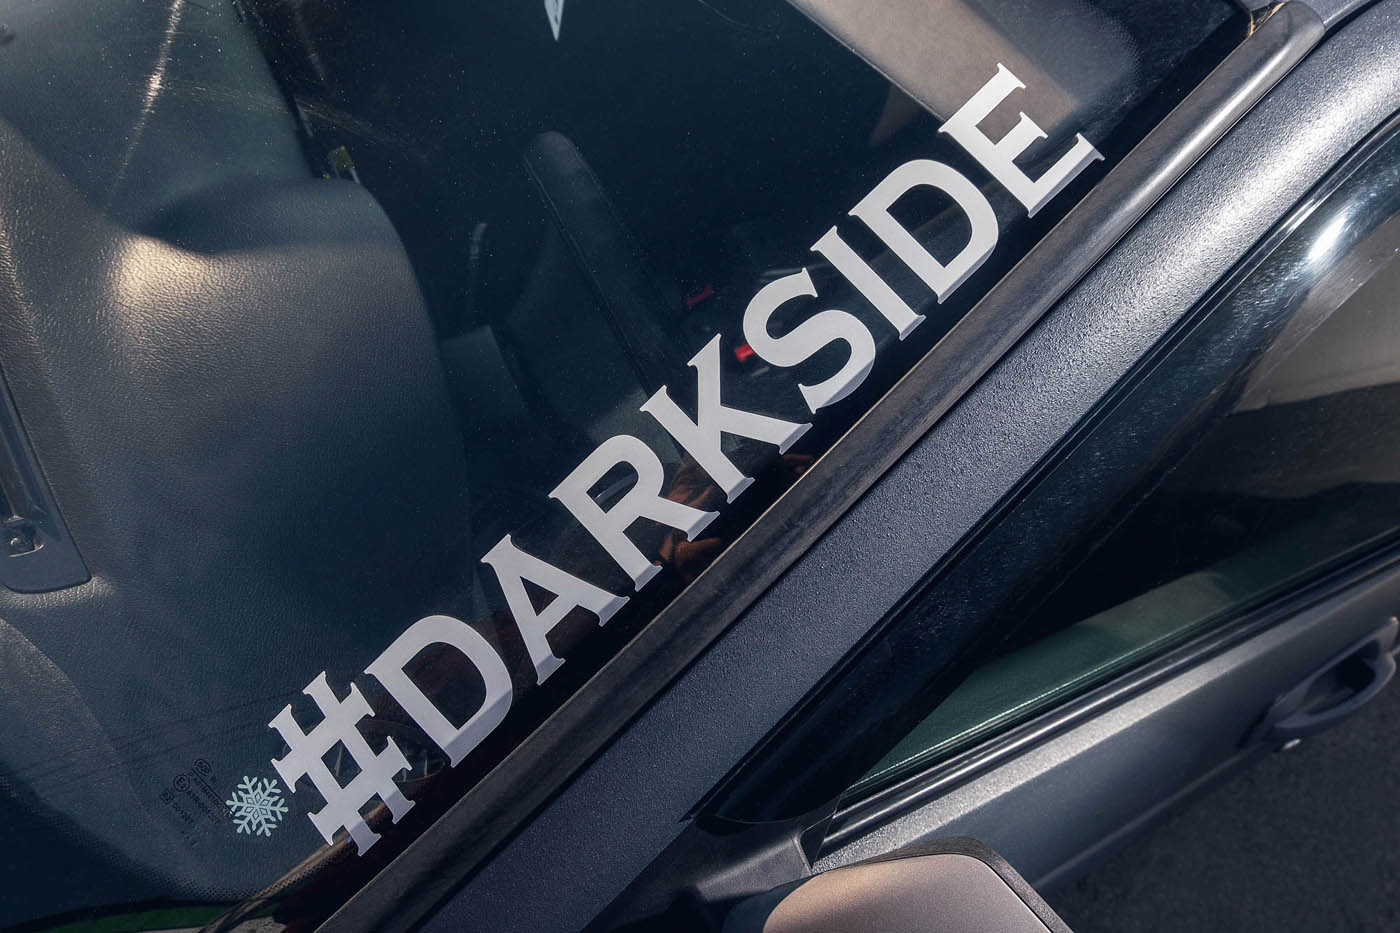 #darkside - хештег, по которому можно найти машину на Драйве.